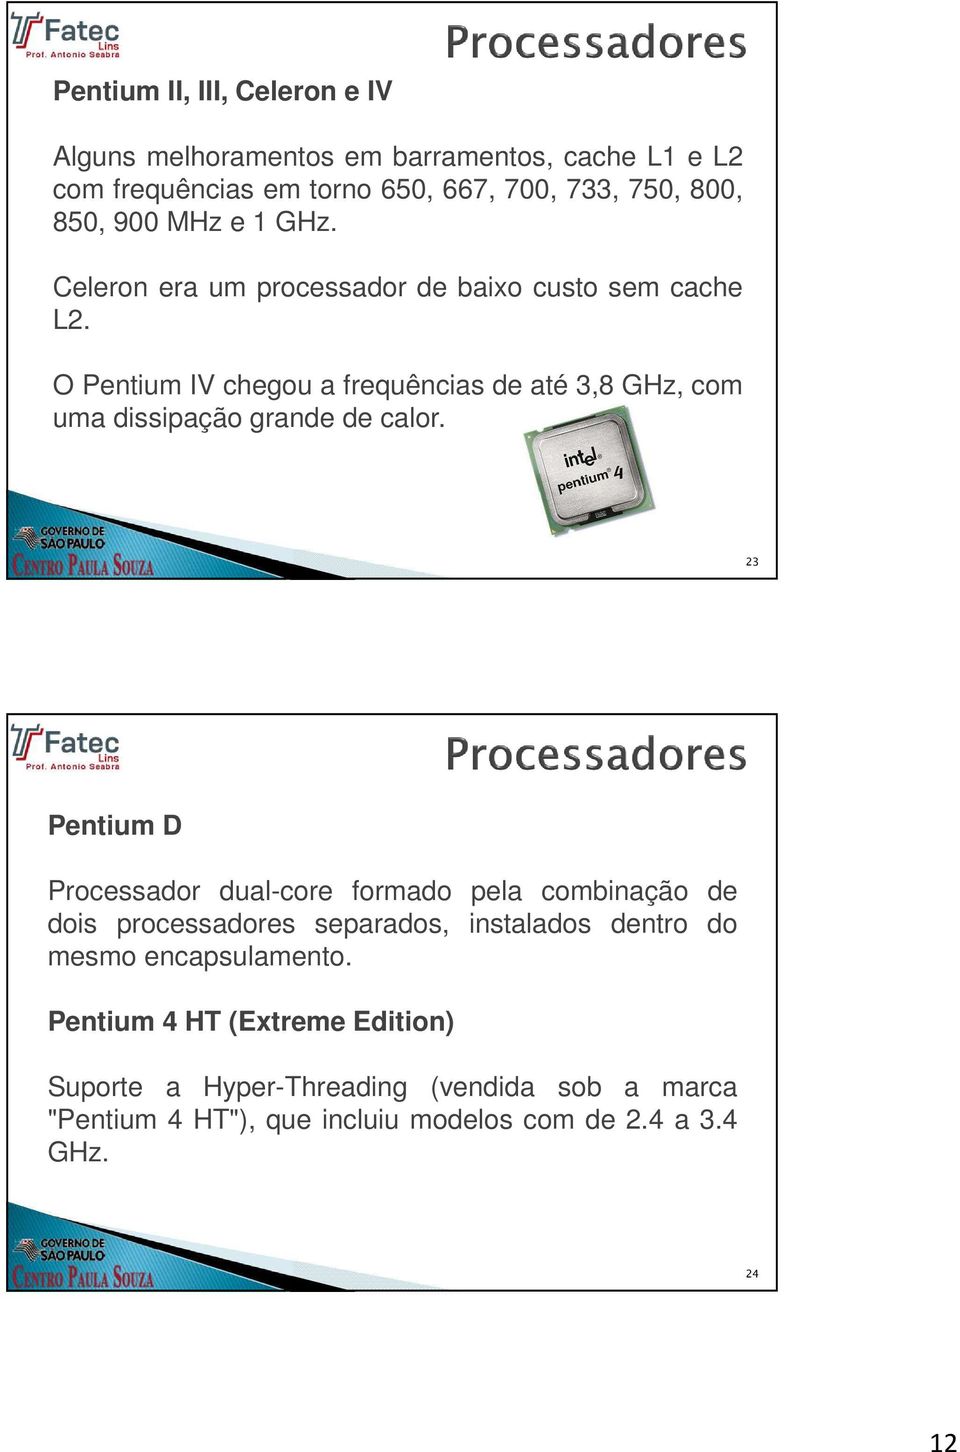 O Pentium IV chegou a frequências de até 3,8 GHz, com uma dissipação grande de calor.